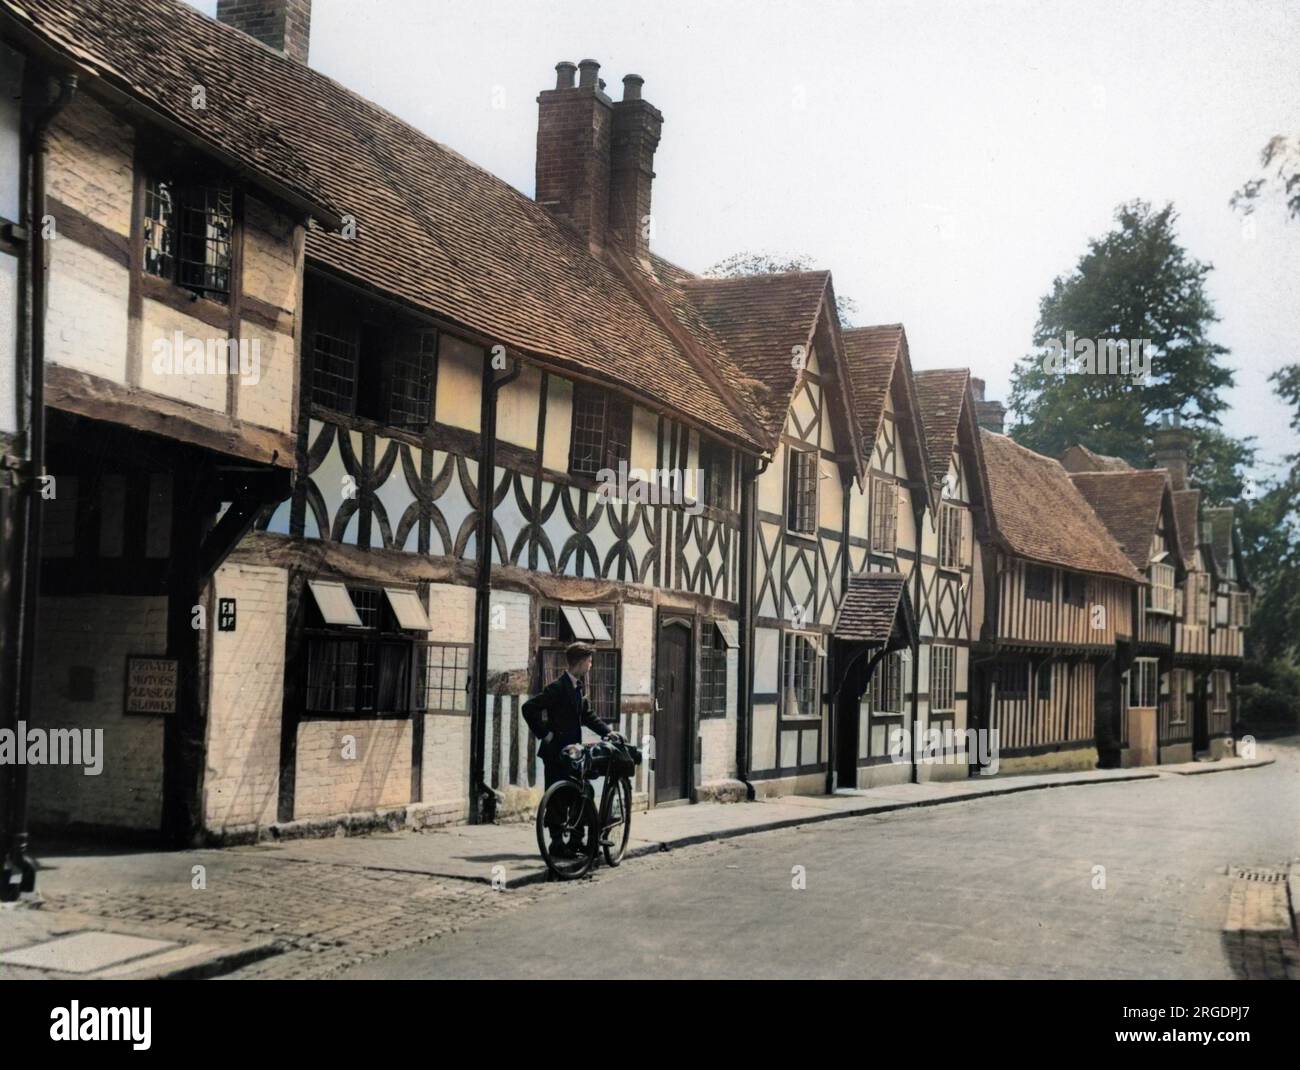 Mill Street, Warwick, avec un cycliste admirant une rangée de maisons à colombages Tudor, un aperçu de l'Angleterre de Shakespeare. Banque D'Images